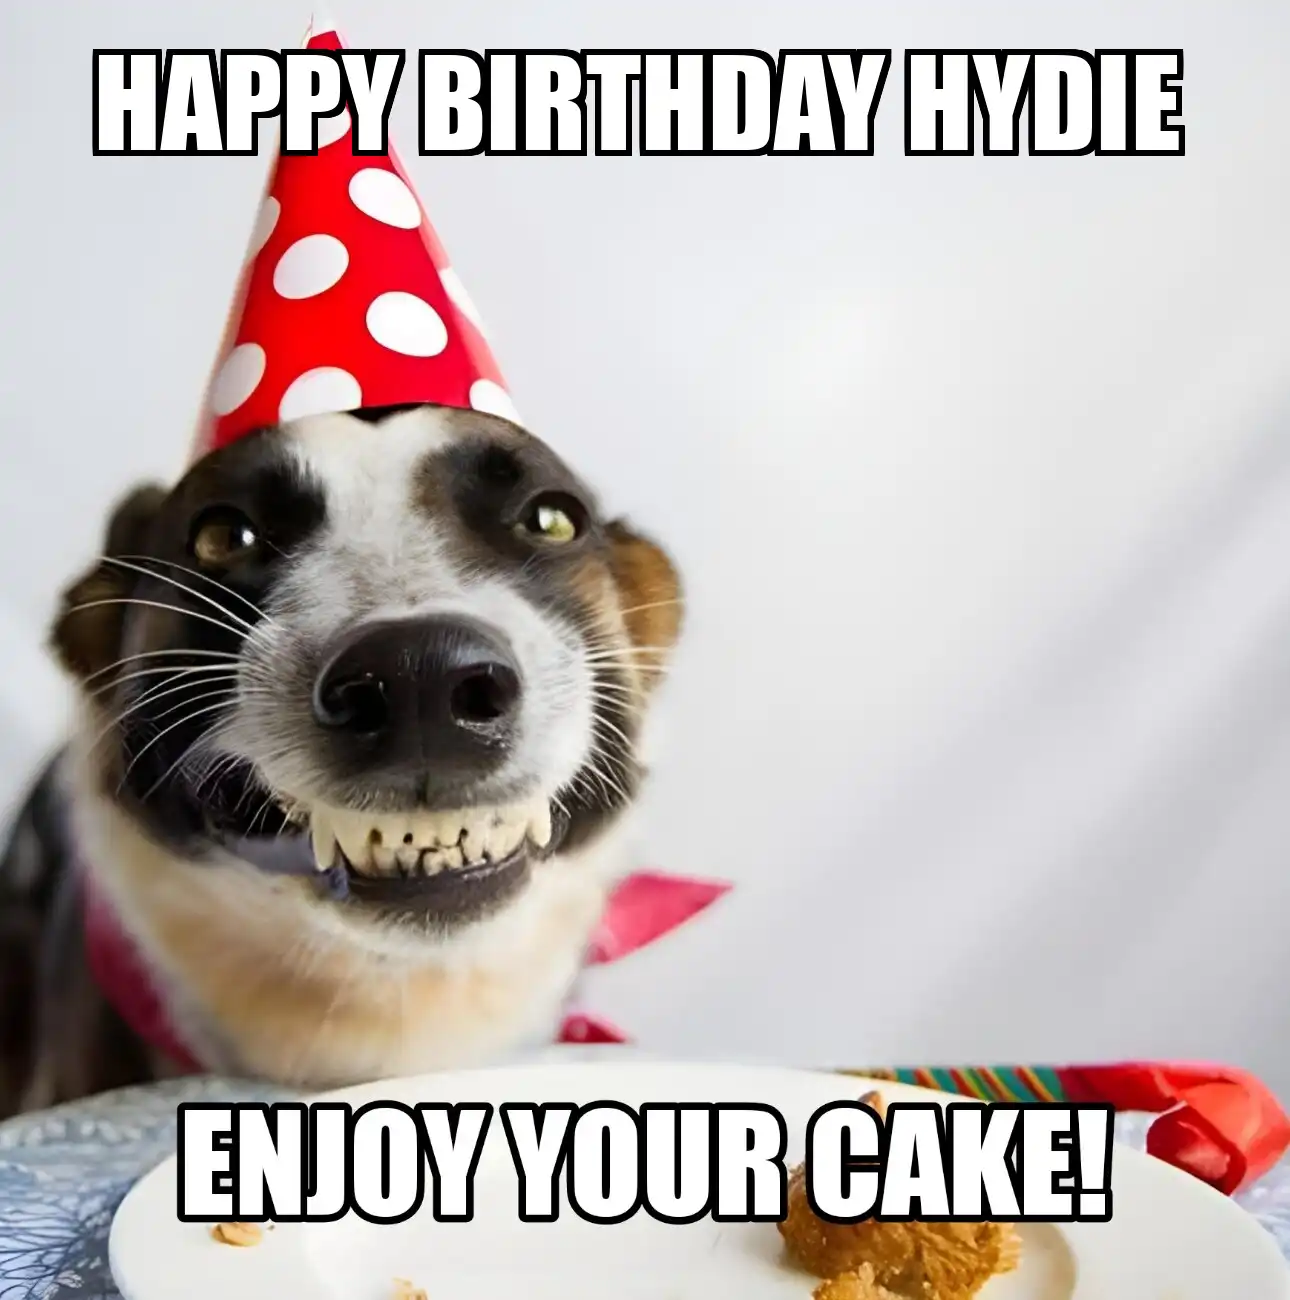 Happy Birthday Hydie Enjoy Your Cake Dog Meme